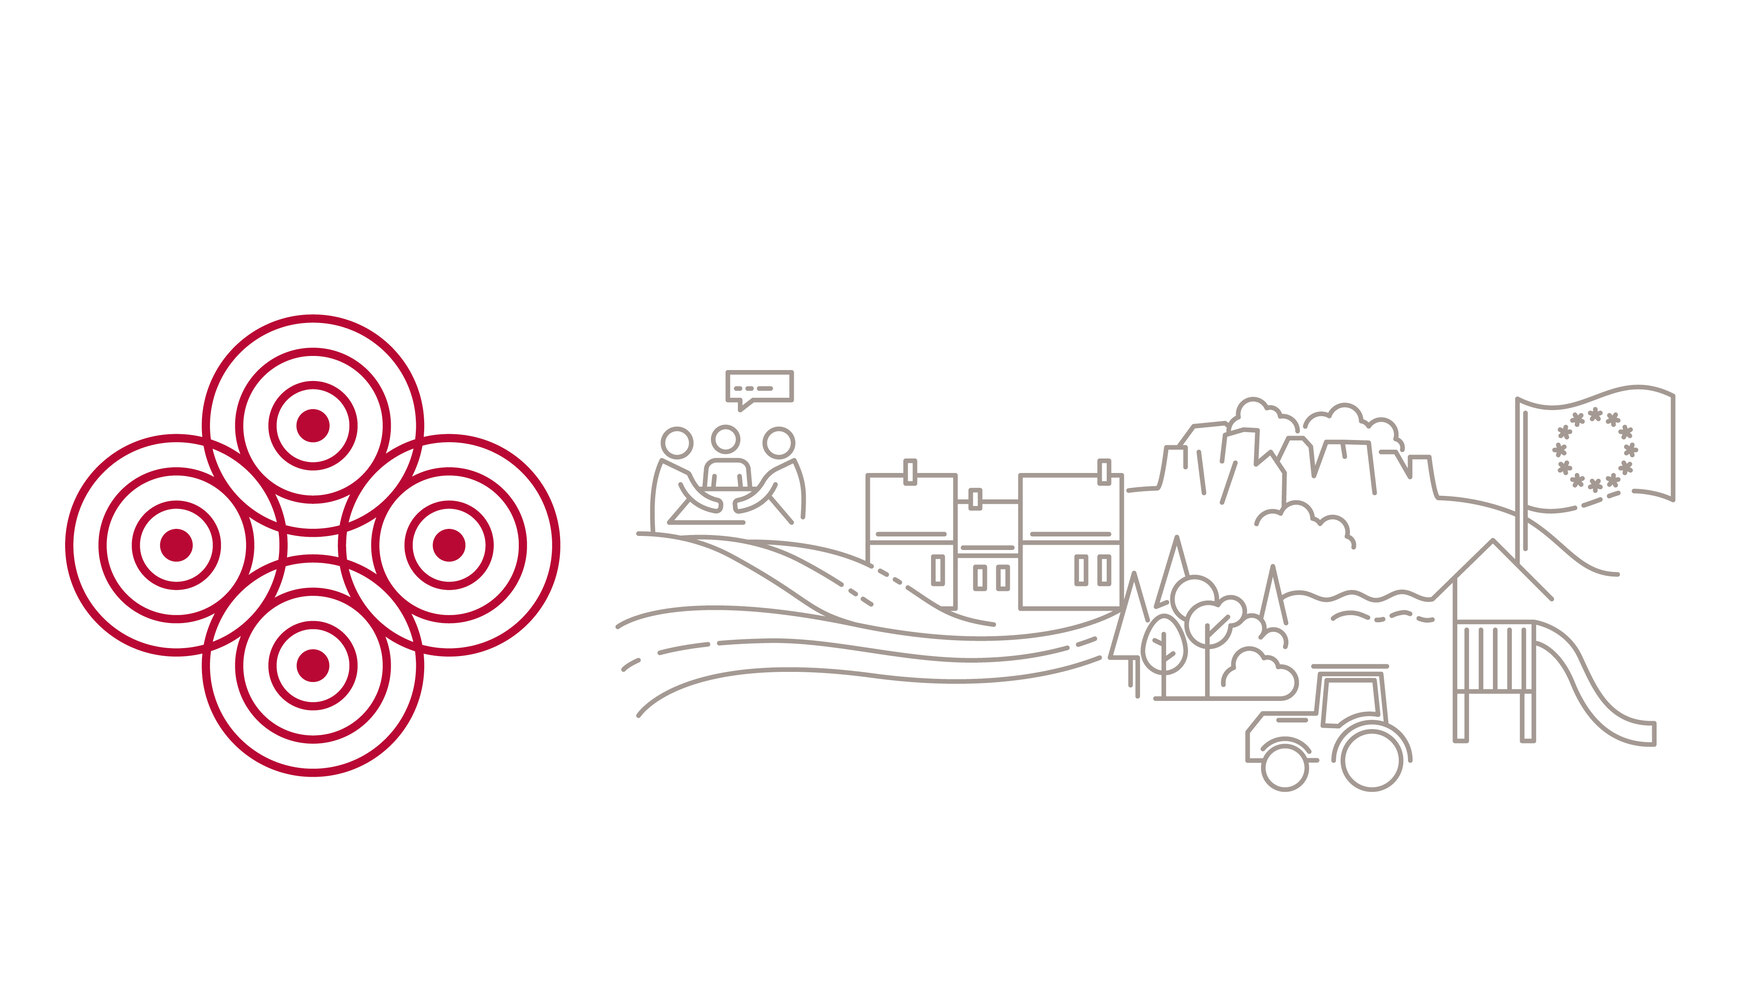 zu sehen ist das Logo des ländlichen Raums in Sachsen: Vier konzentrische Kreise. Daneben Elemente des ländlichen Raums aus der Natur und Dörfern.